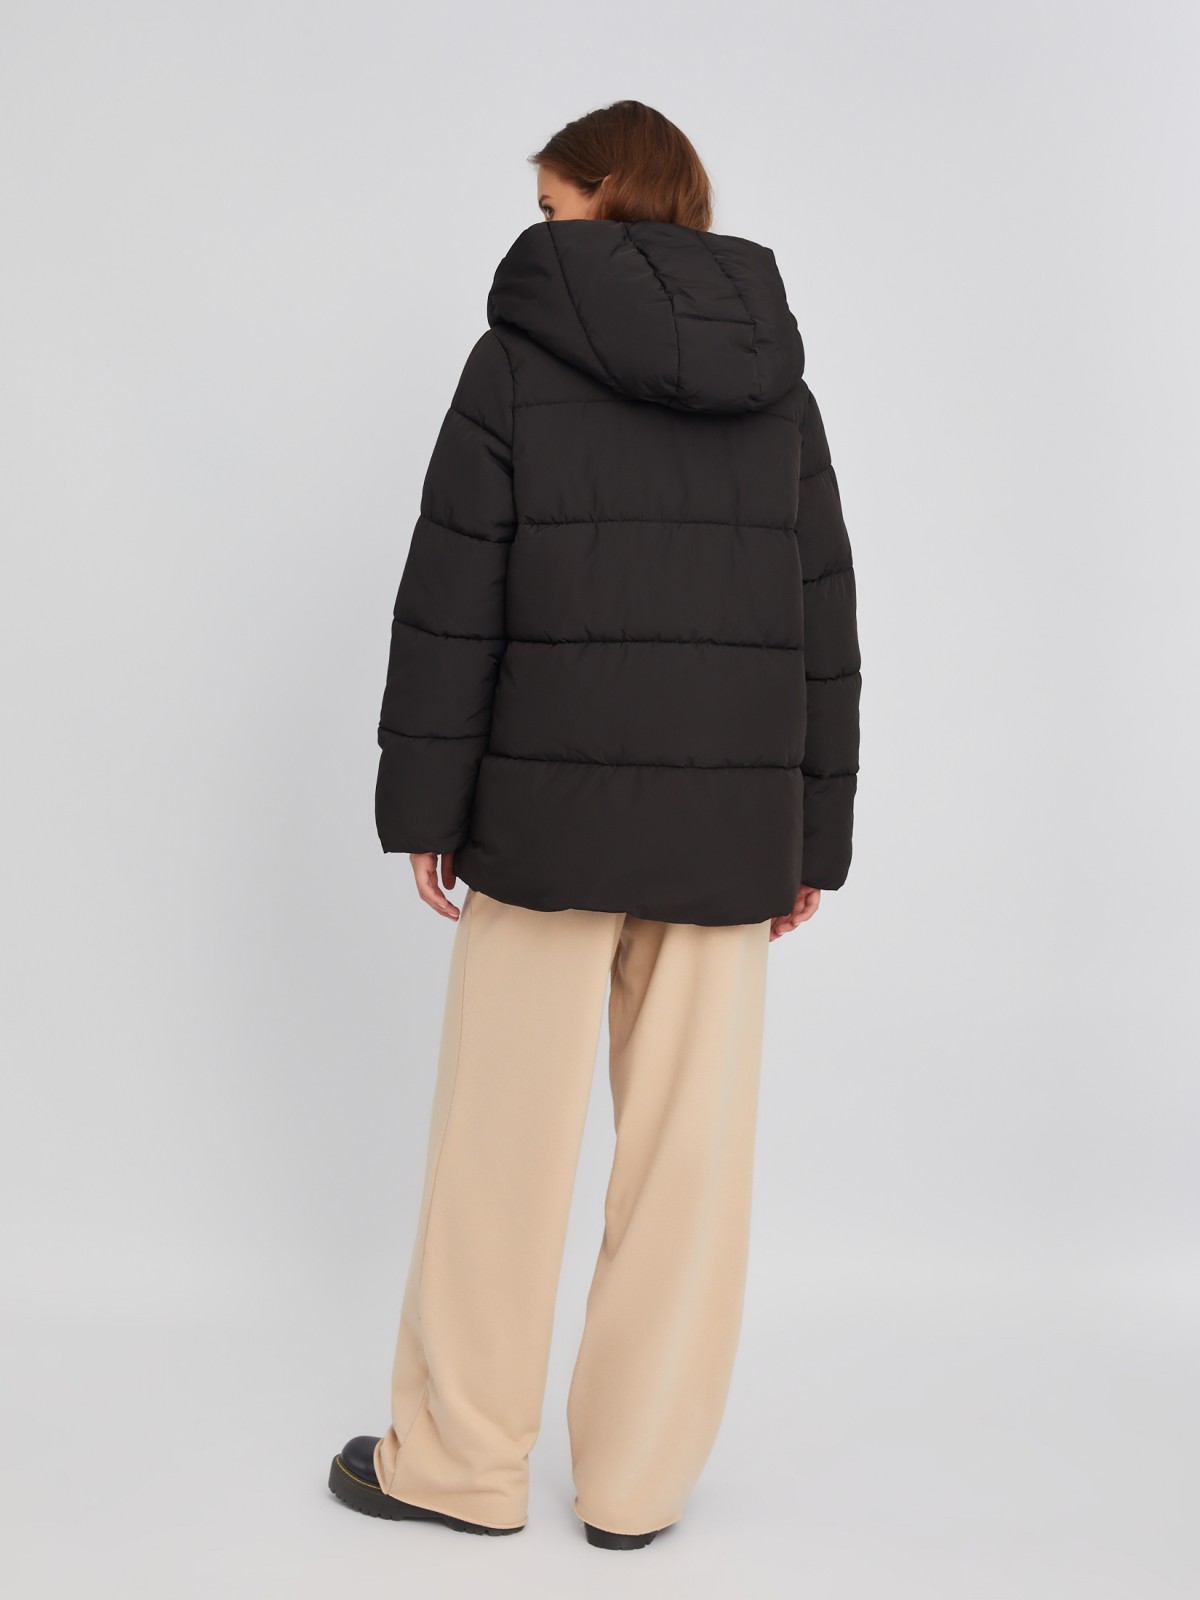 Тёплая стёганая дутая куртка с капюшоном и вшитой манишкой на молнии zolla 02334510L034, цвет черный, размер XS - фото 6